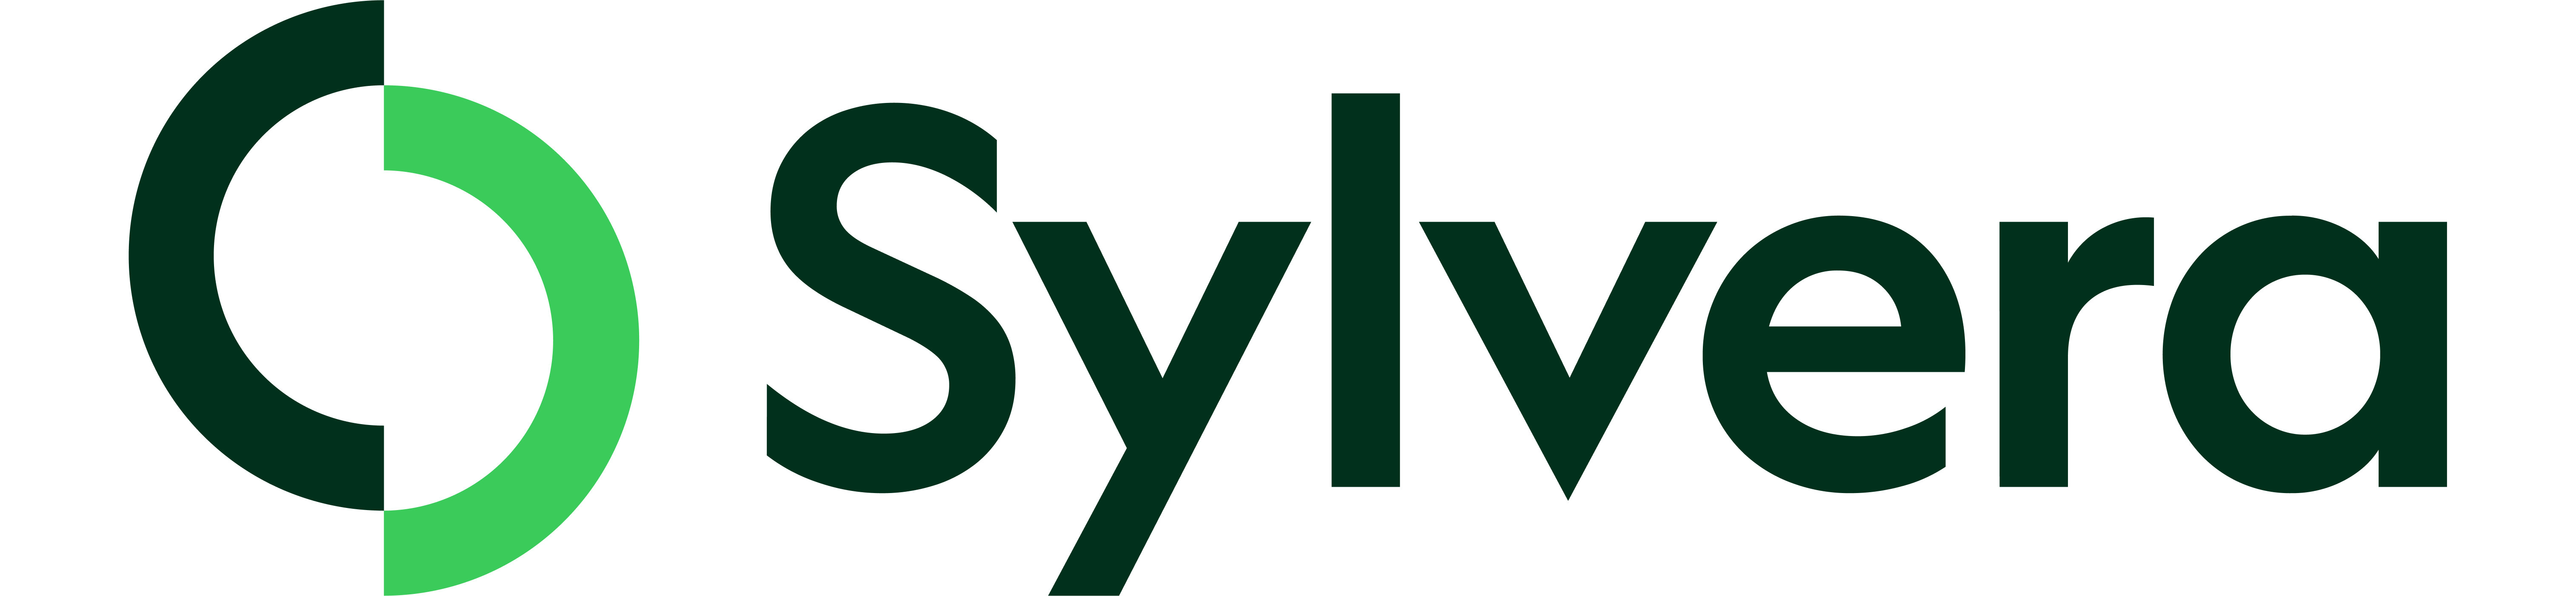 Sylvera logo color.png